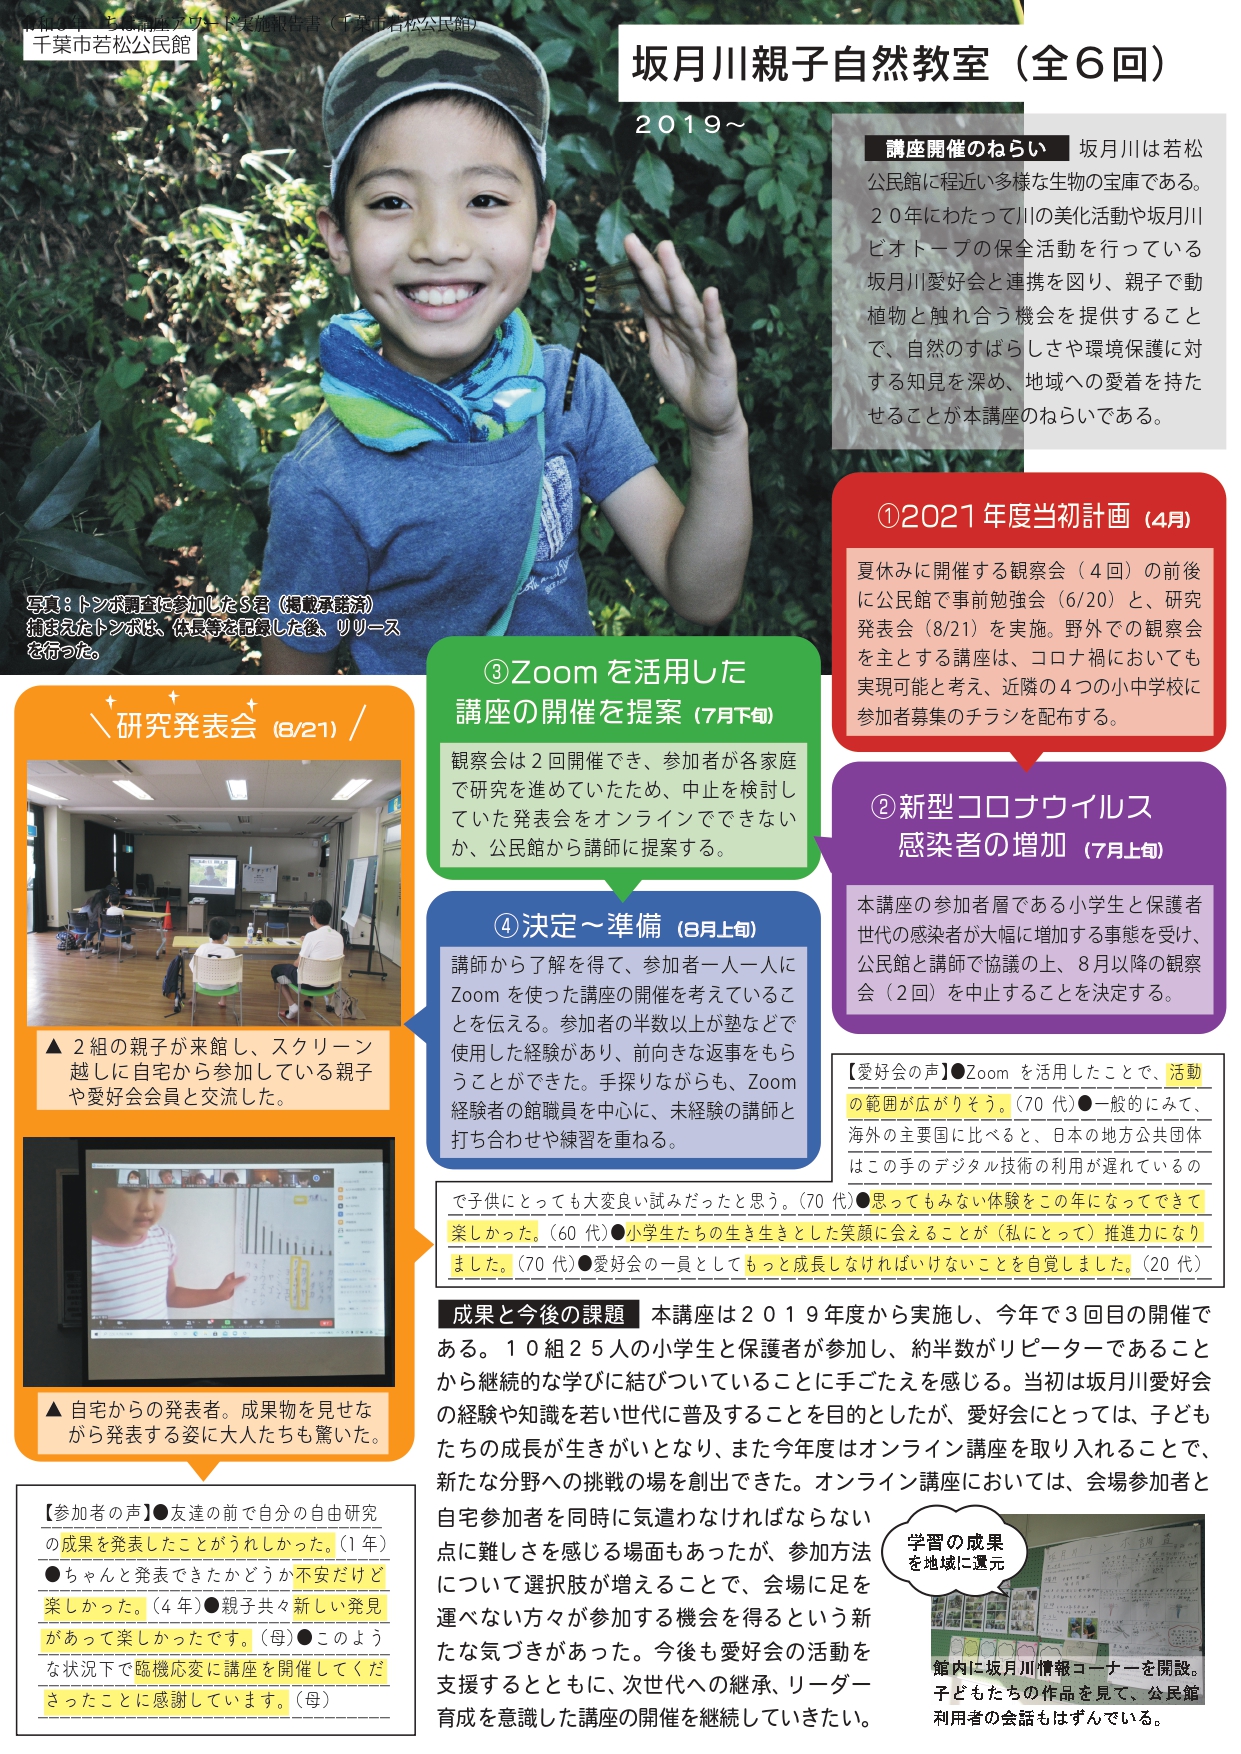 【実施報告書】千葉市若松公民館「坂月川親子自然教室」